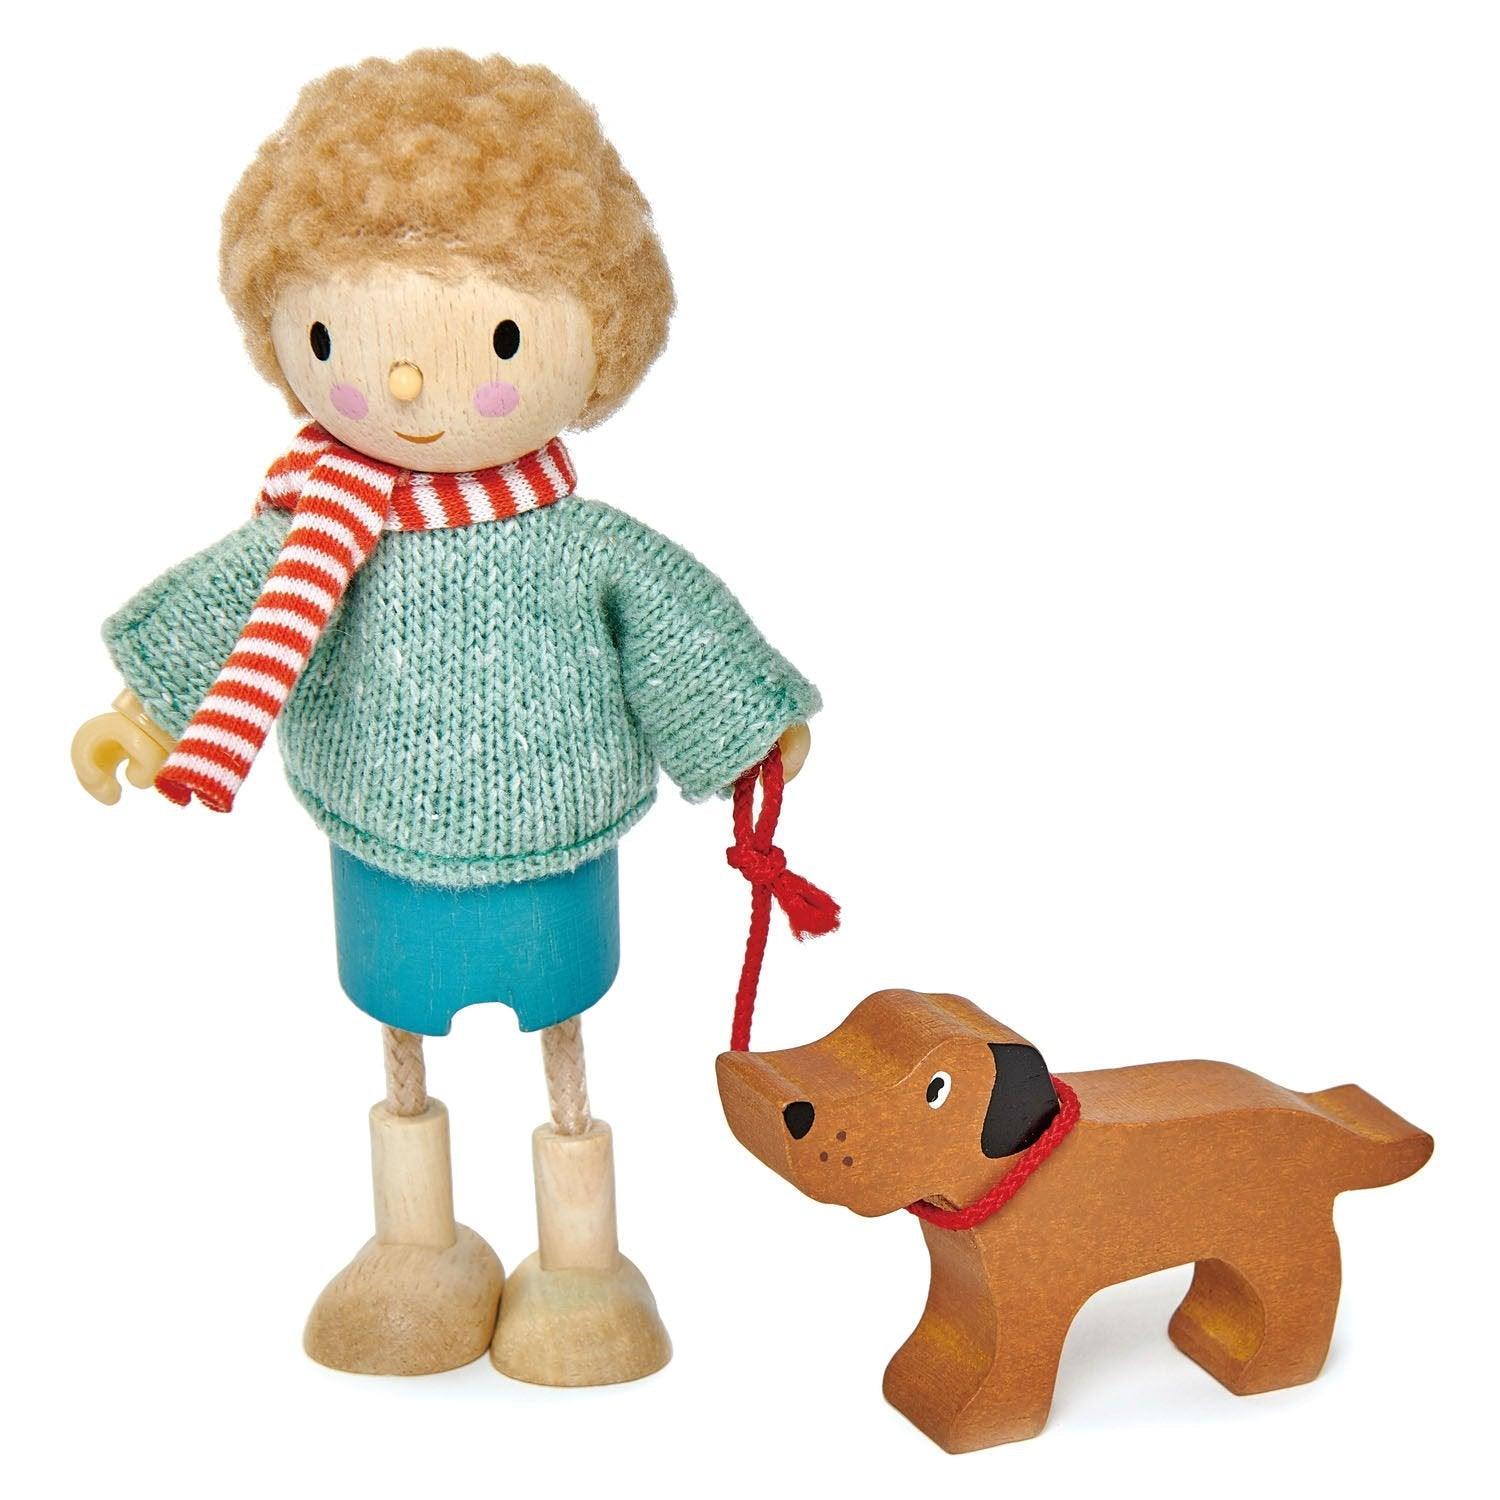 Juguetes de hoja tiernos: el Sr. Goodwood y su muñeca para perros